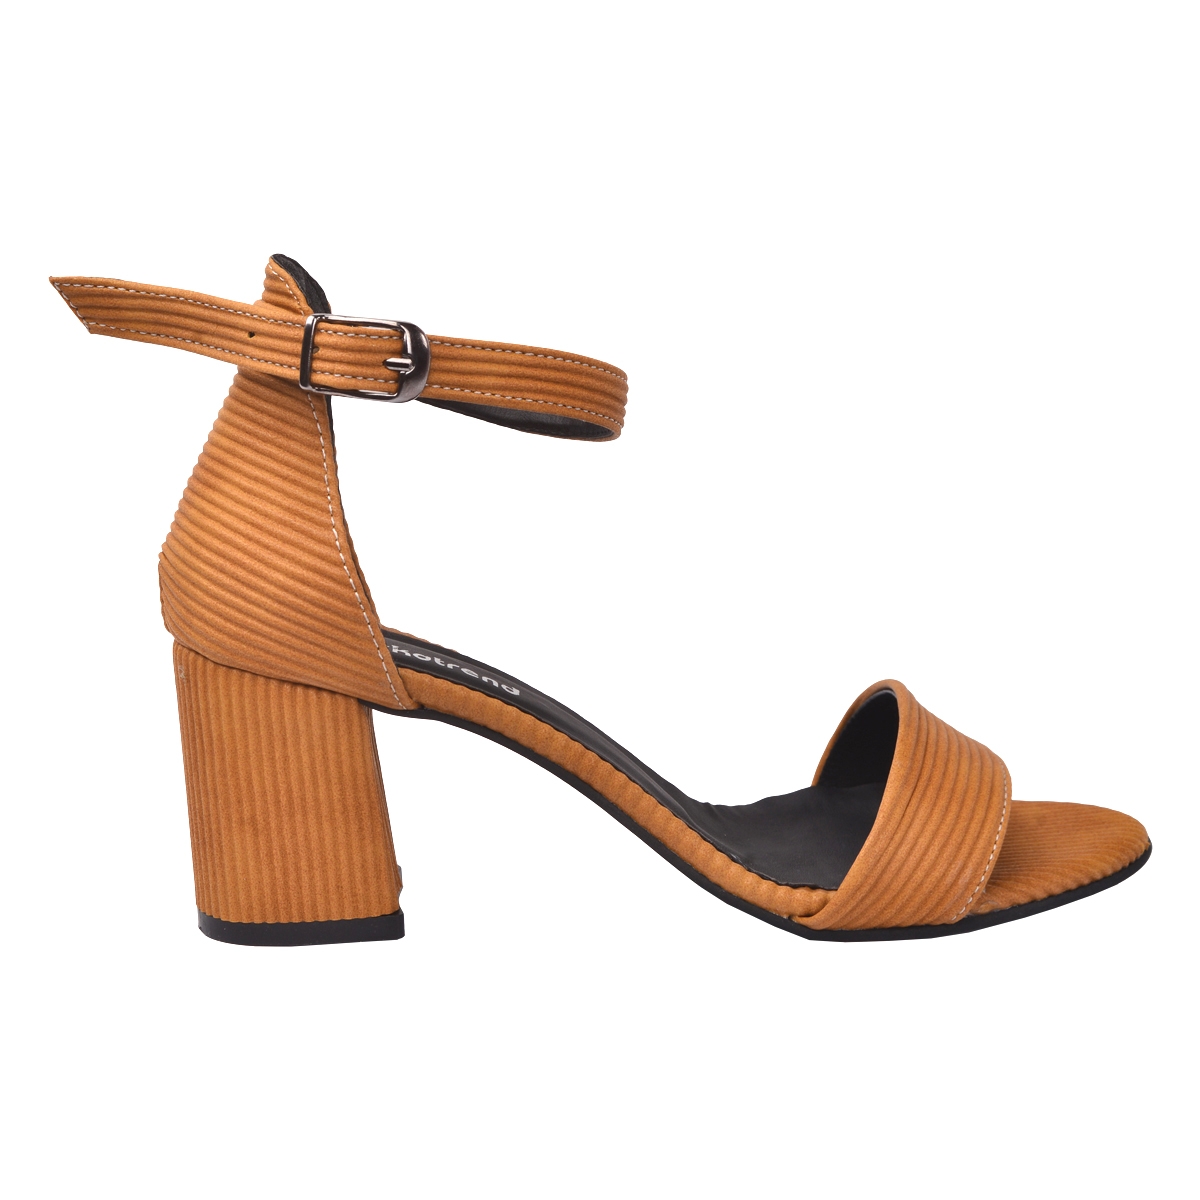 Flo 2013-05 Fitilli 7 Cm Topuk Bayan Sandalet Ayakkabı Hardal. 2